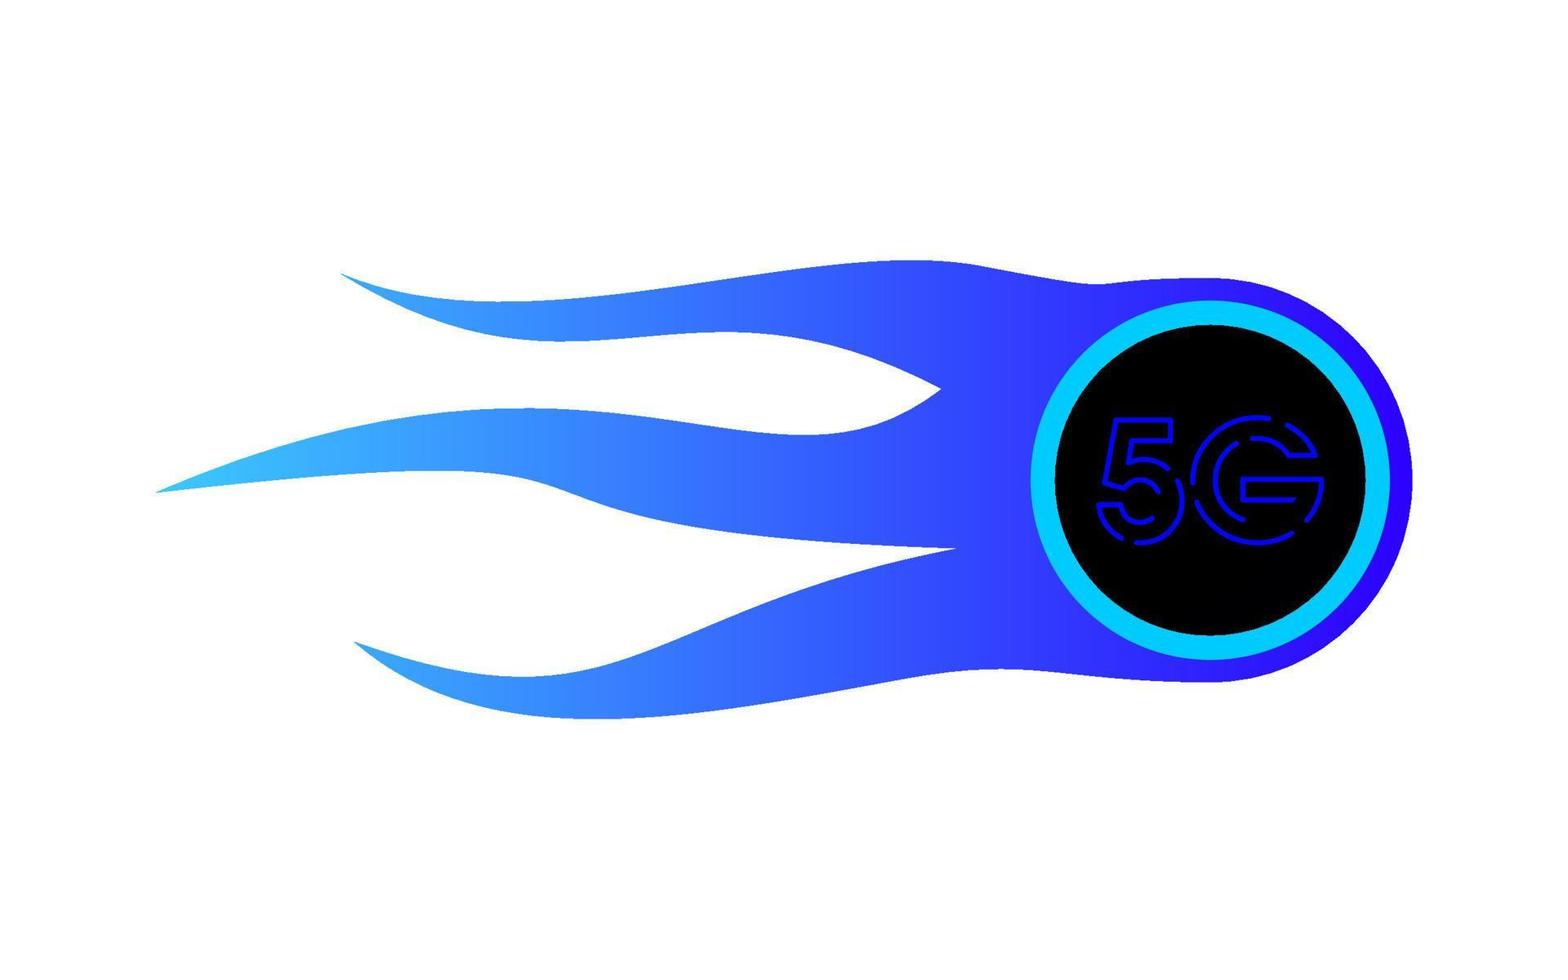 connexion réseau 5g super rapide, concept de logo boule de feu. vecteur